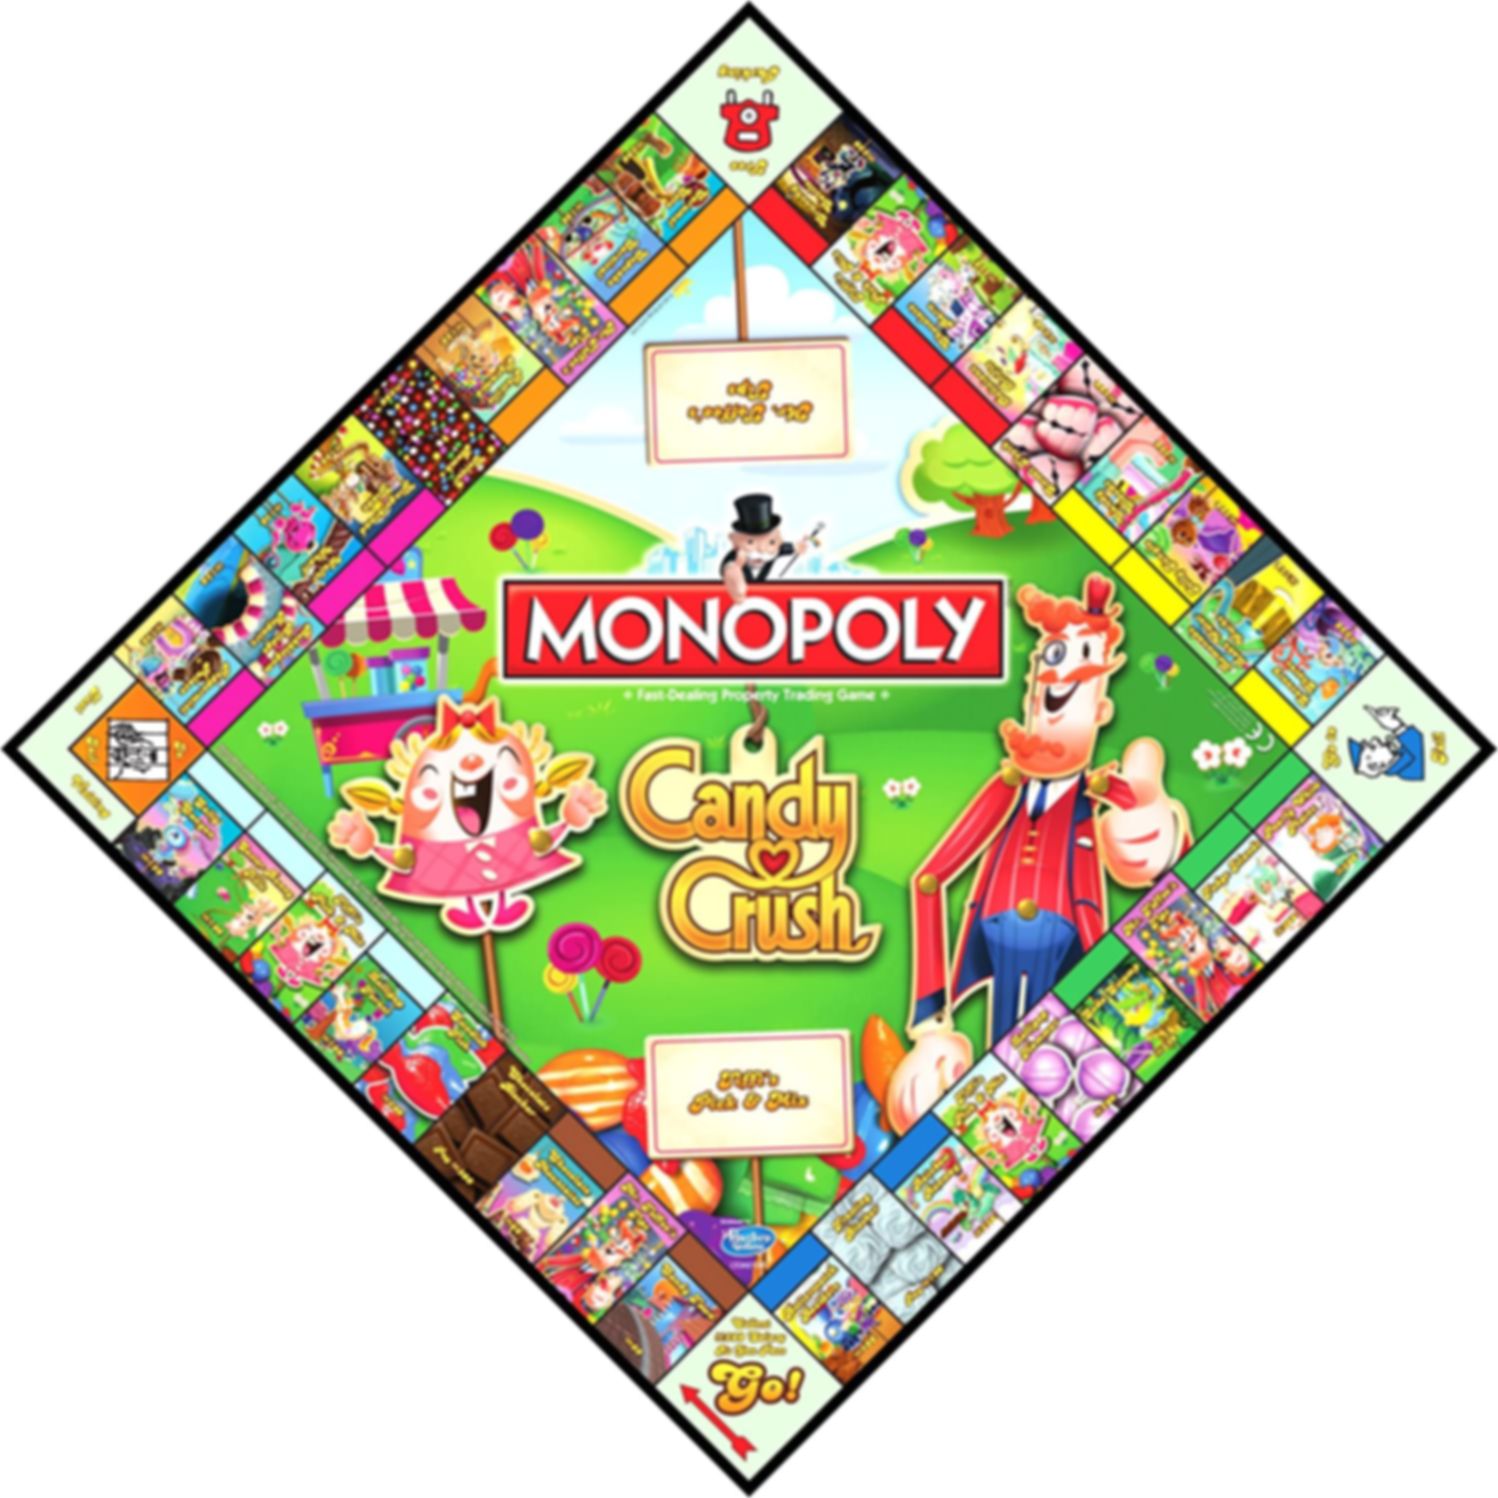 Monopoly Candy Crush tavolo da gioco